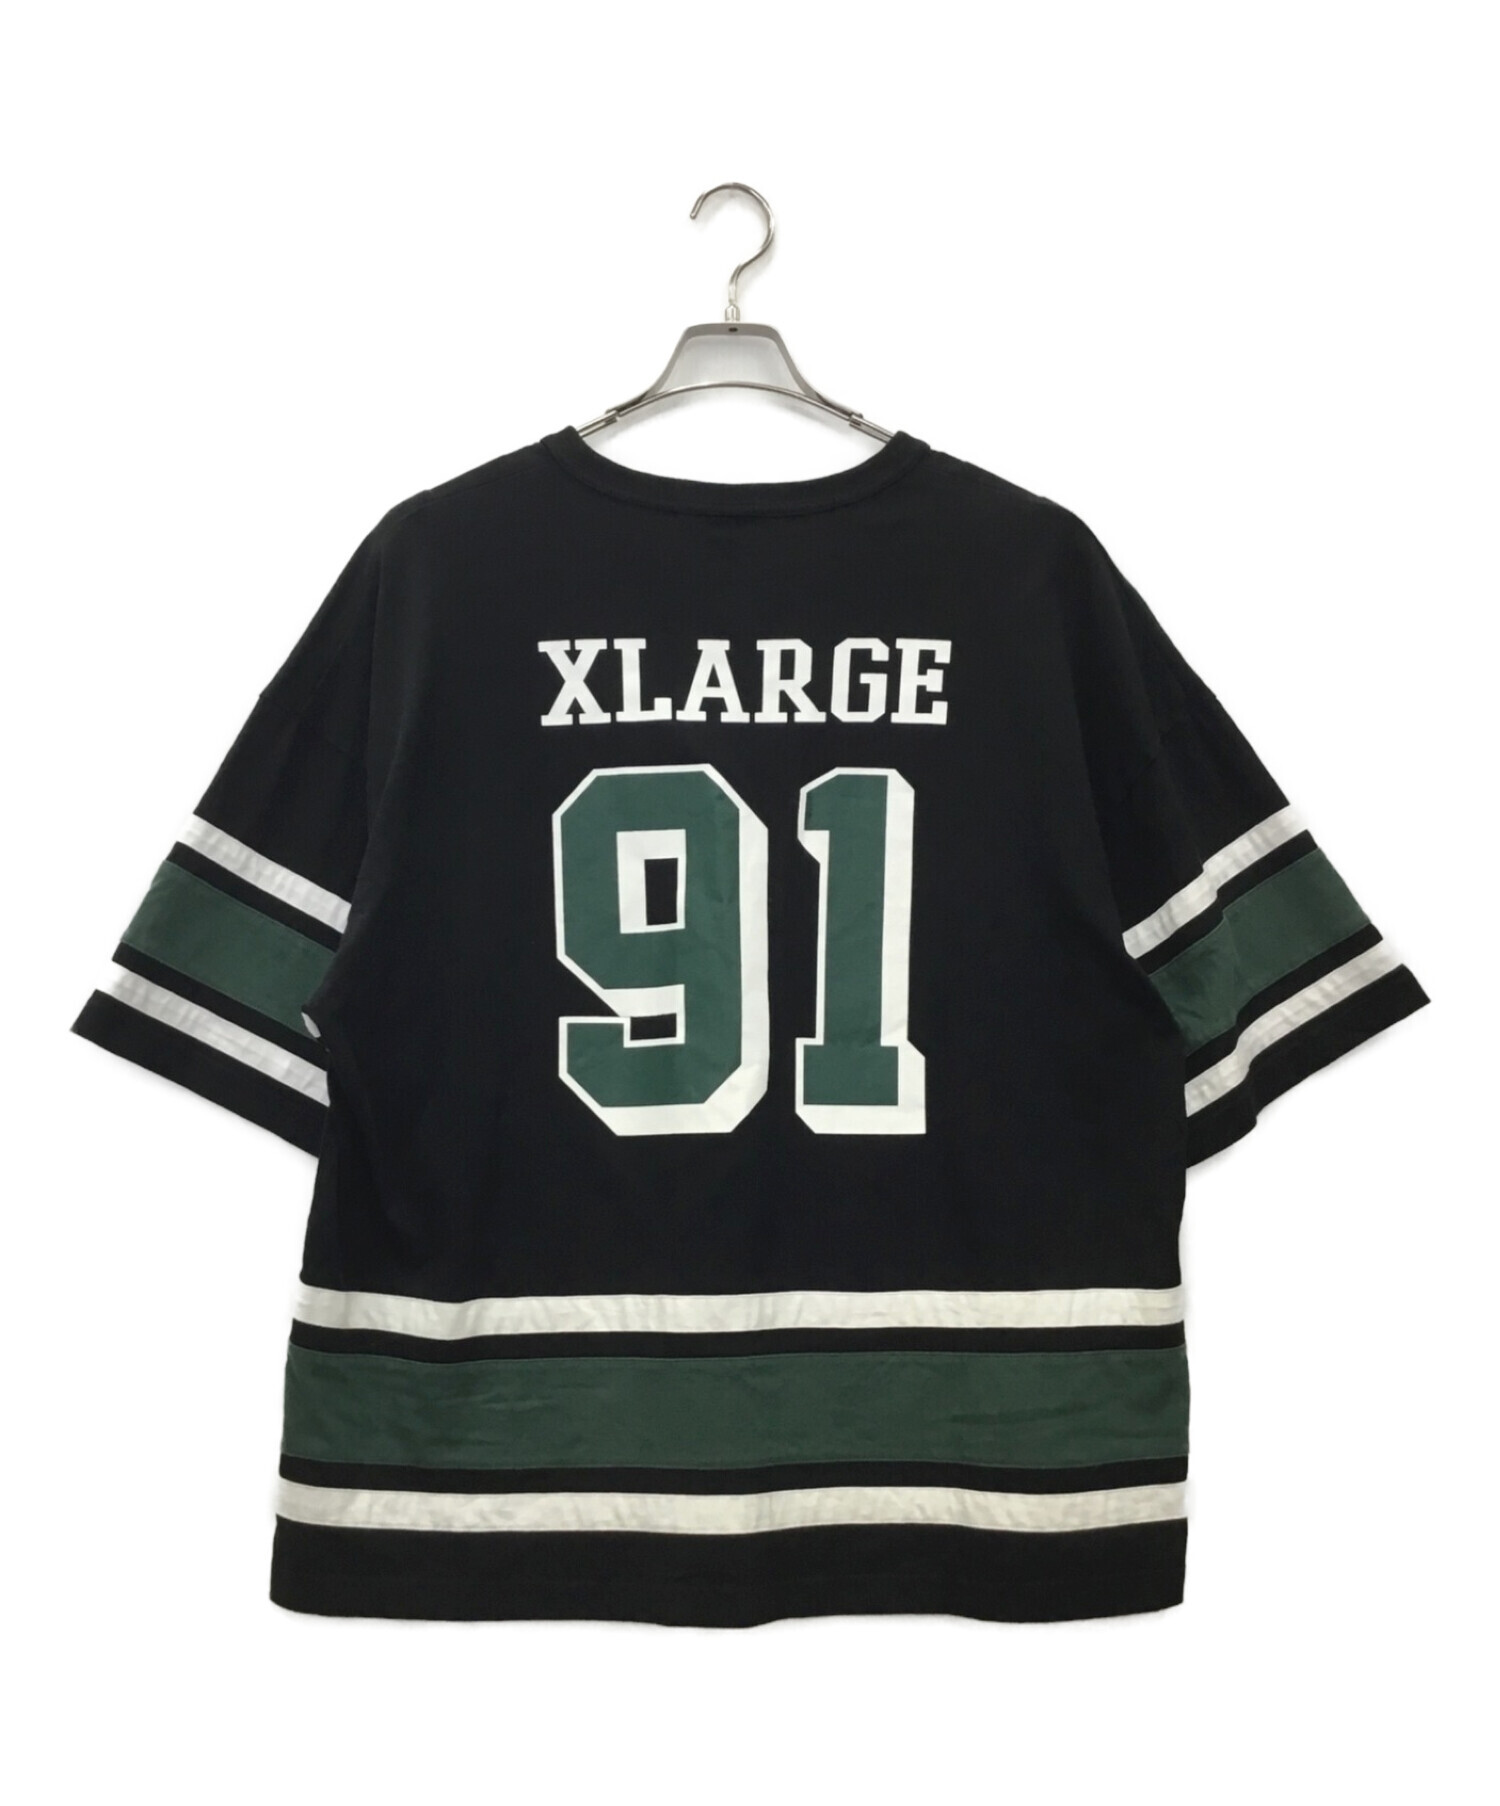 xlarge champion フットボール tシャツ - Tシャツ/カットソー(半袖/袖なし)